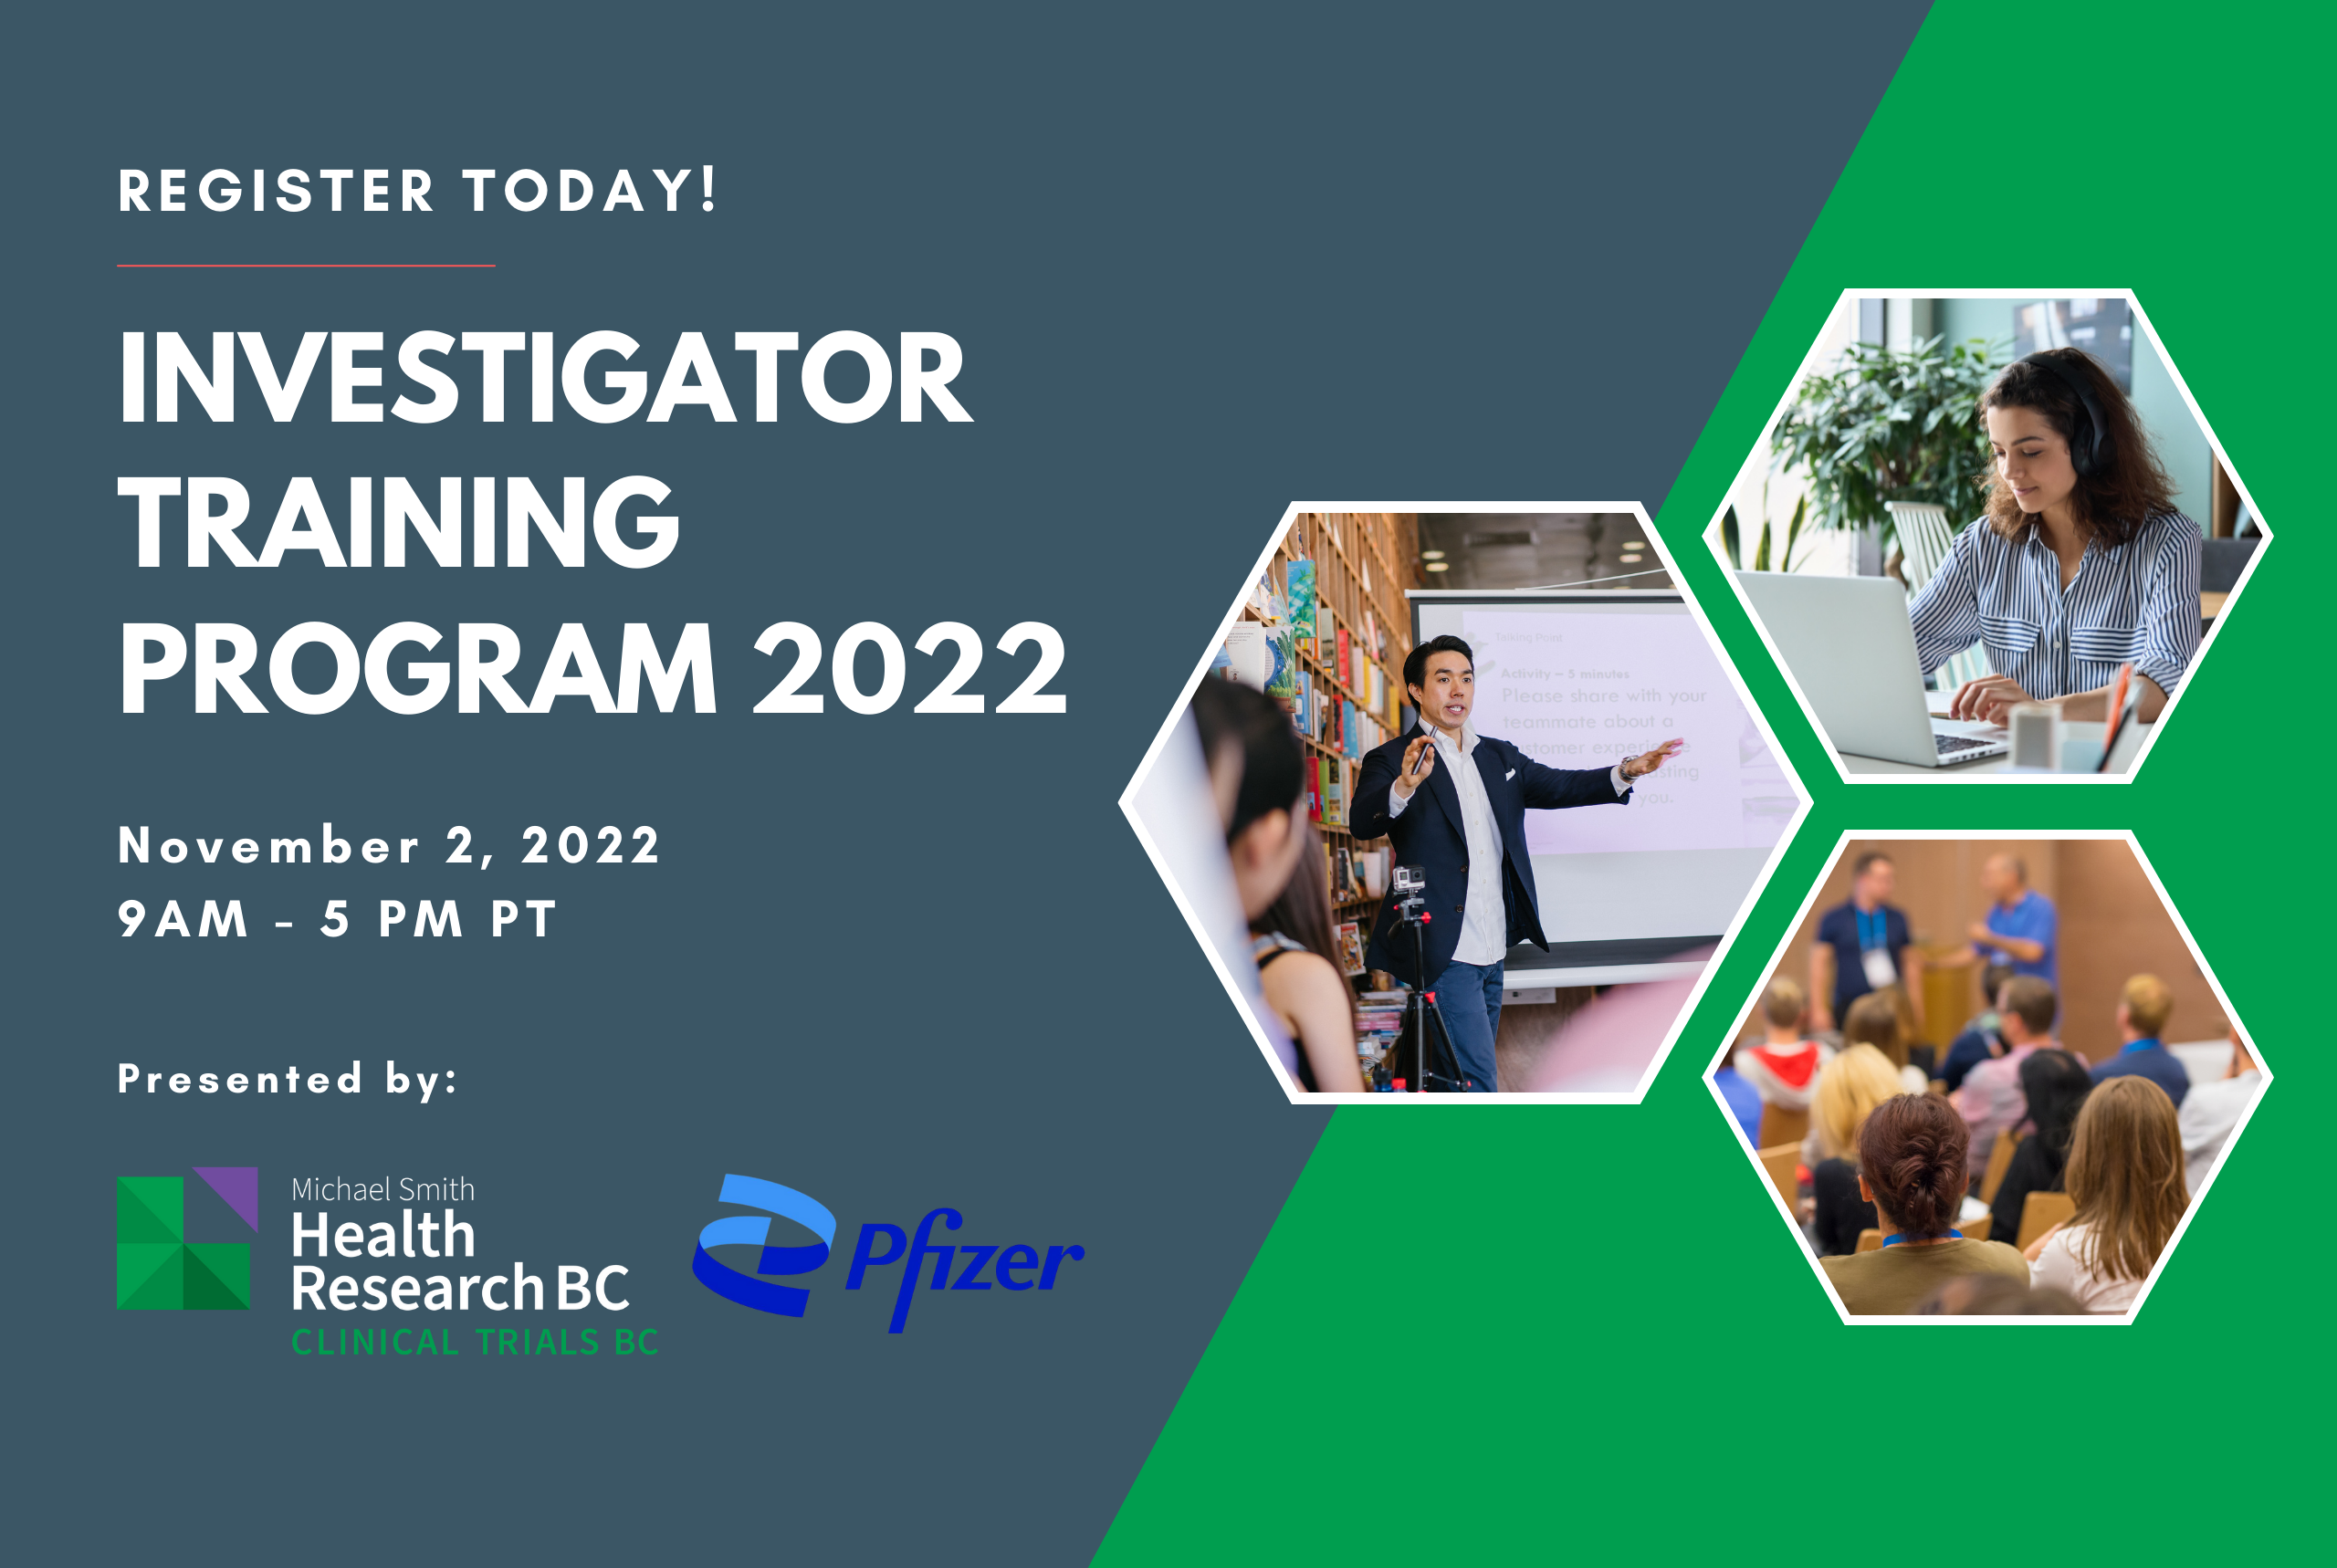 Investigator Training Program 2022 opens for registration